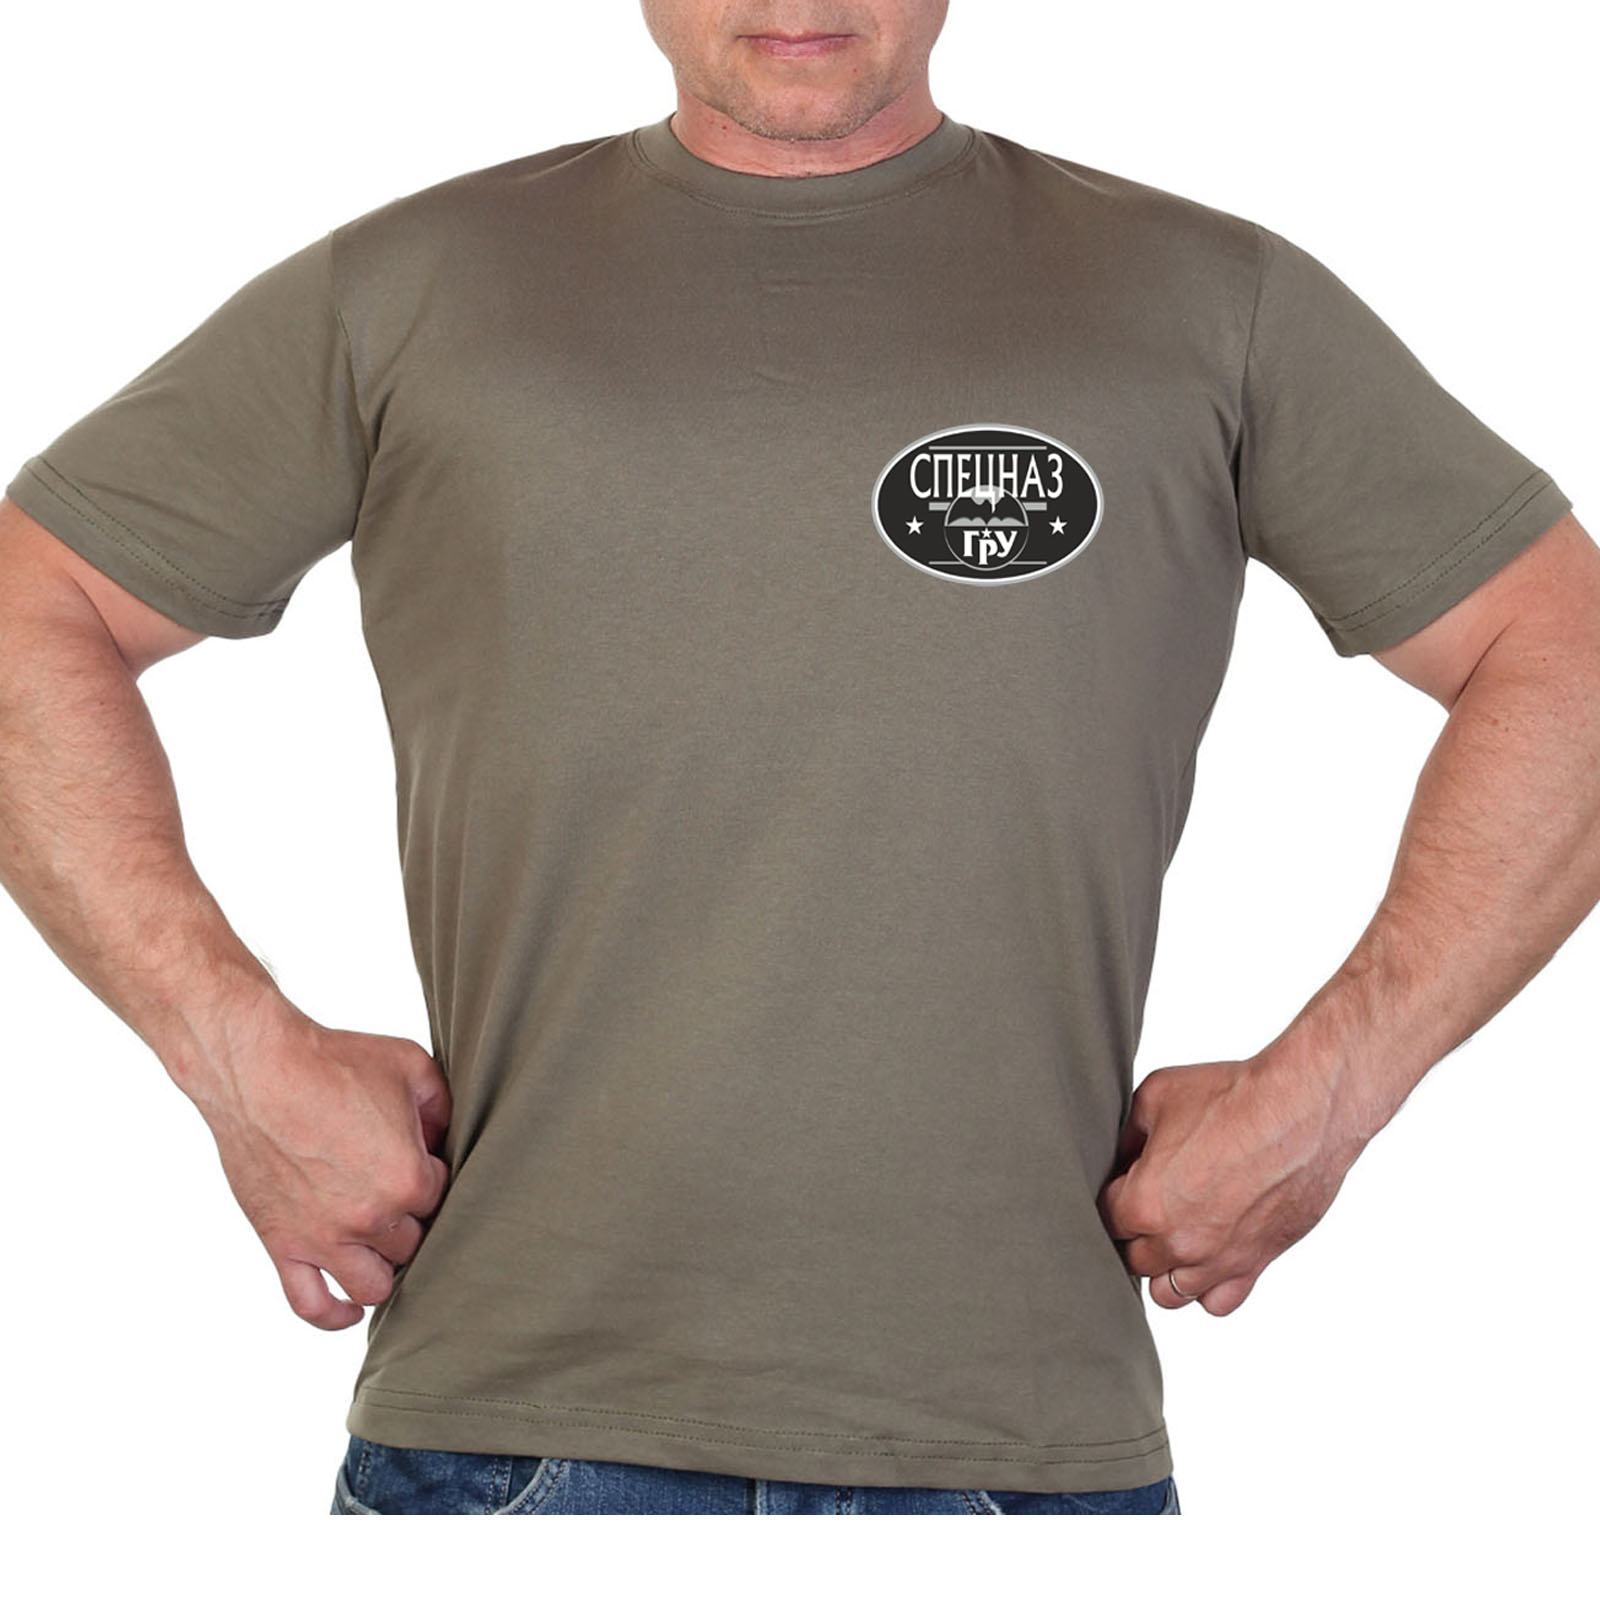 Оливковая футболка с термотрансфером "Спецназ ГРУ"